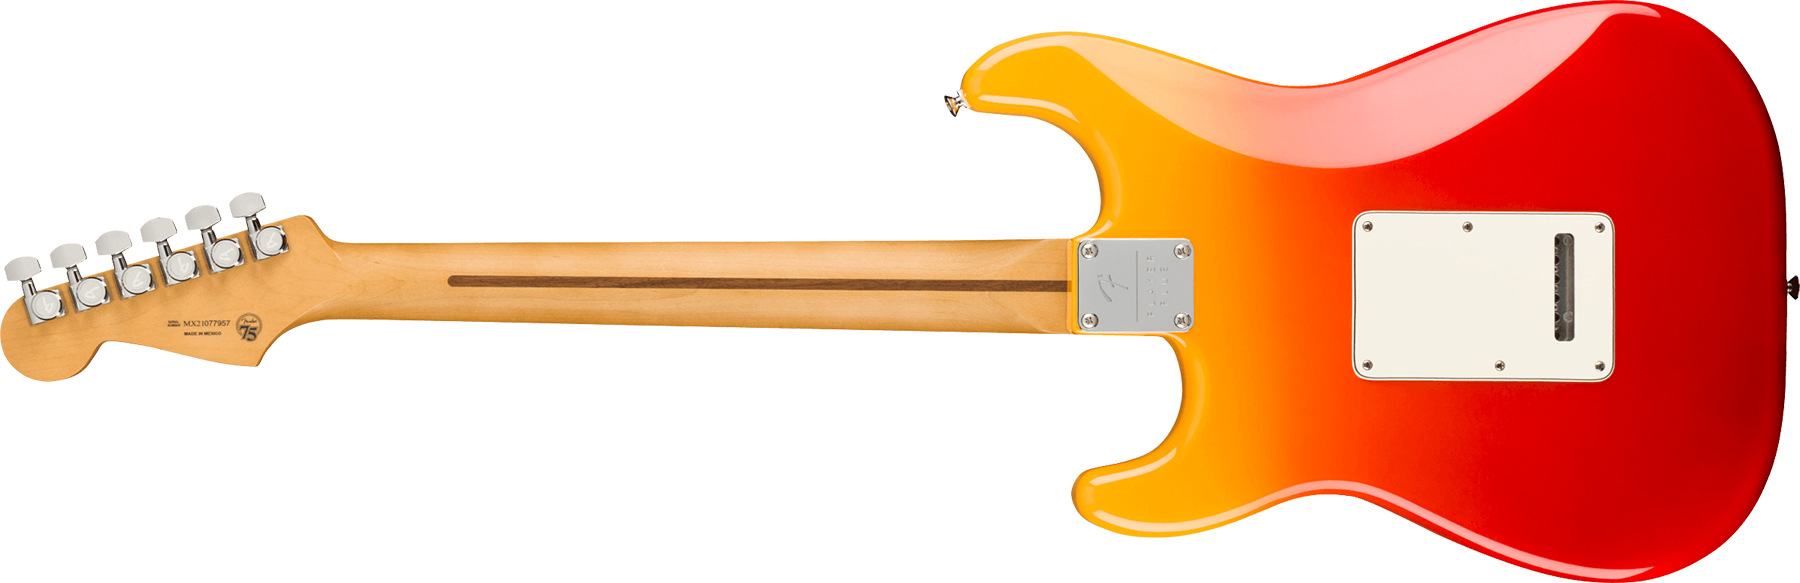 Fender Strat Player Plus Mex 3s Trem Mn - Tequila Sunrise - Guitare Électrique Forme Str - Variation 1